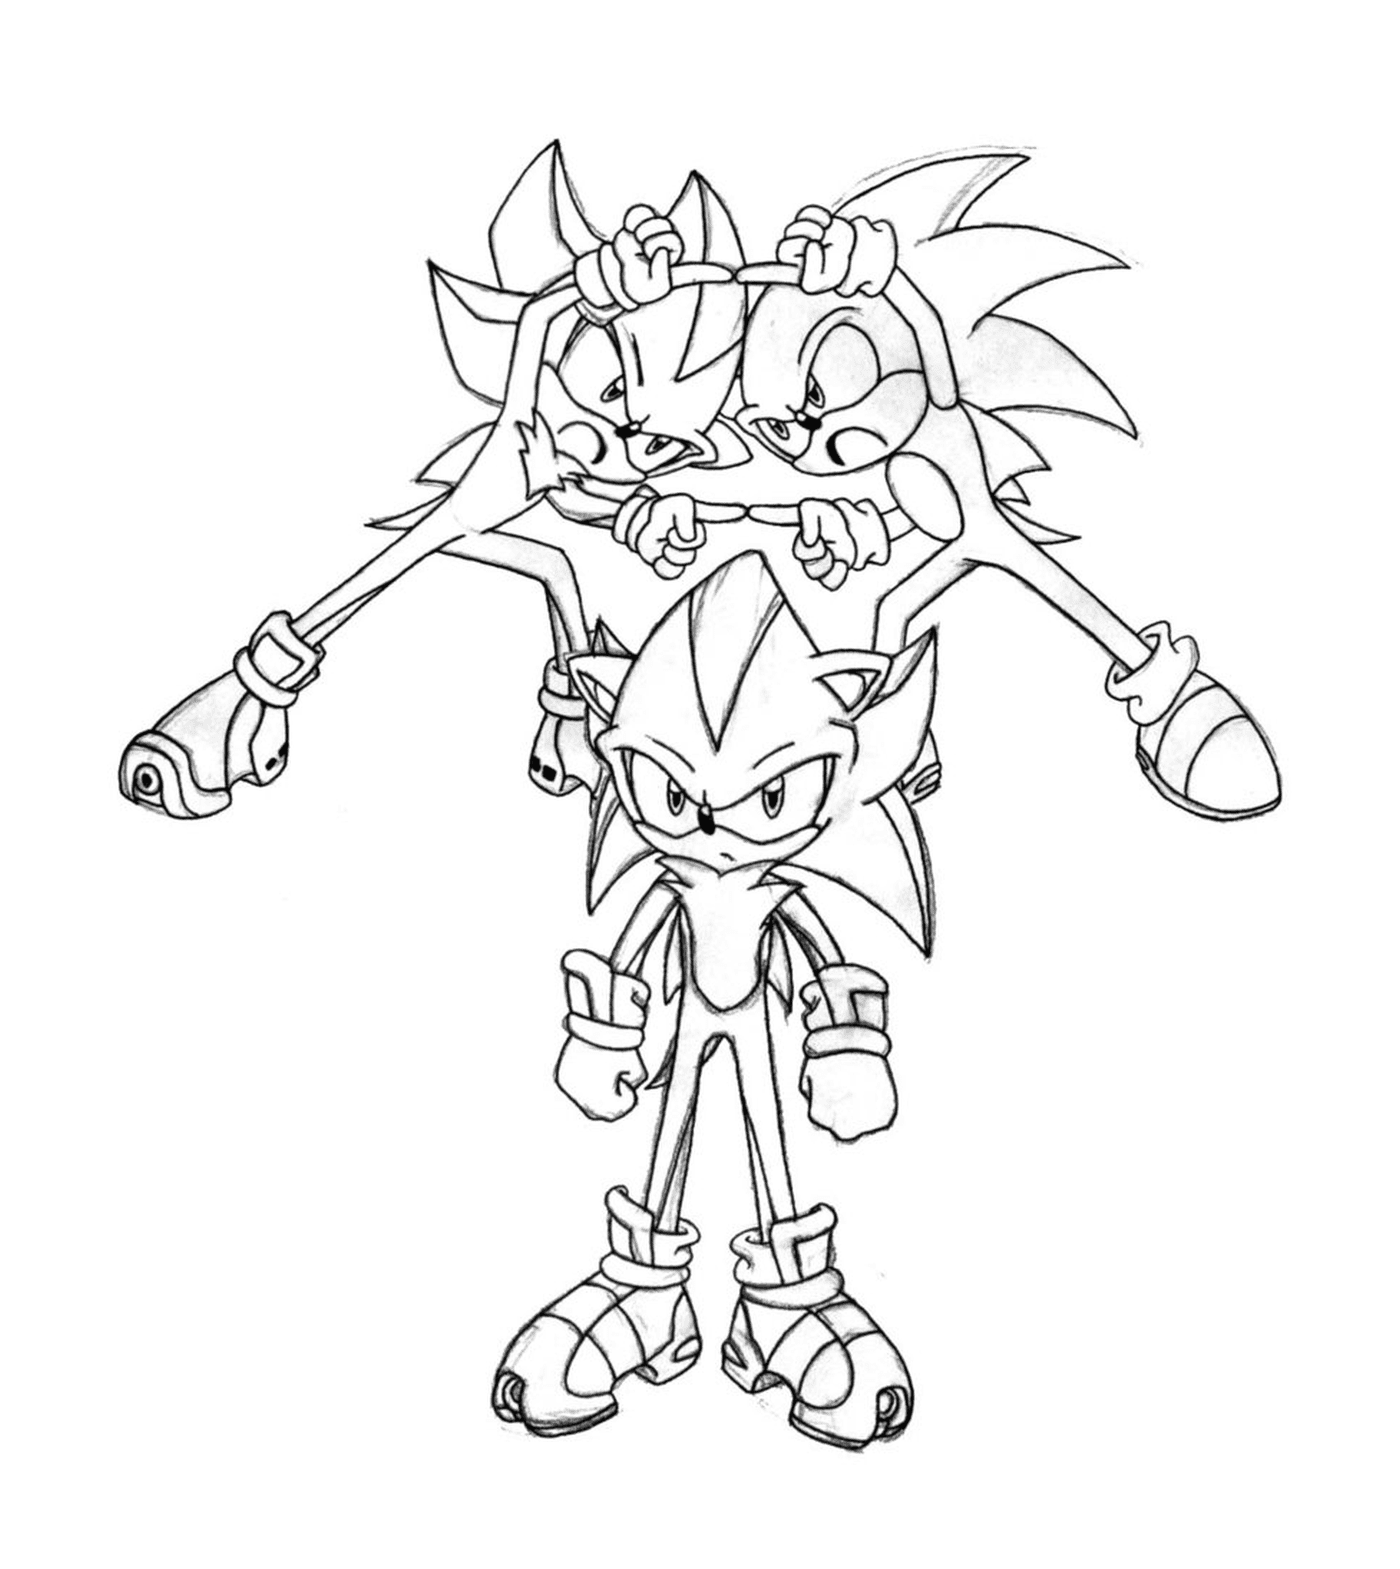  Sonic pieno di energia 